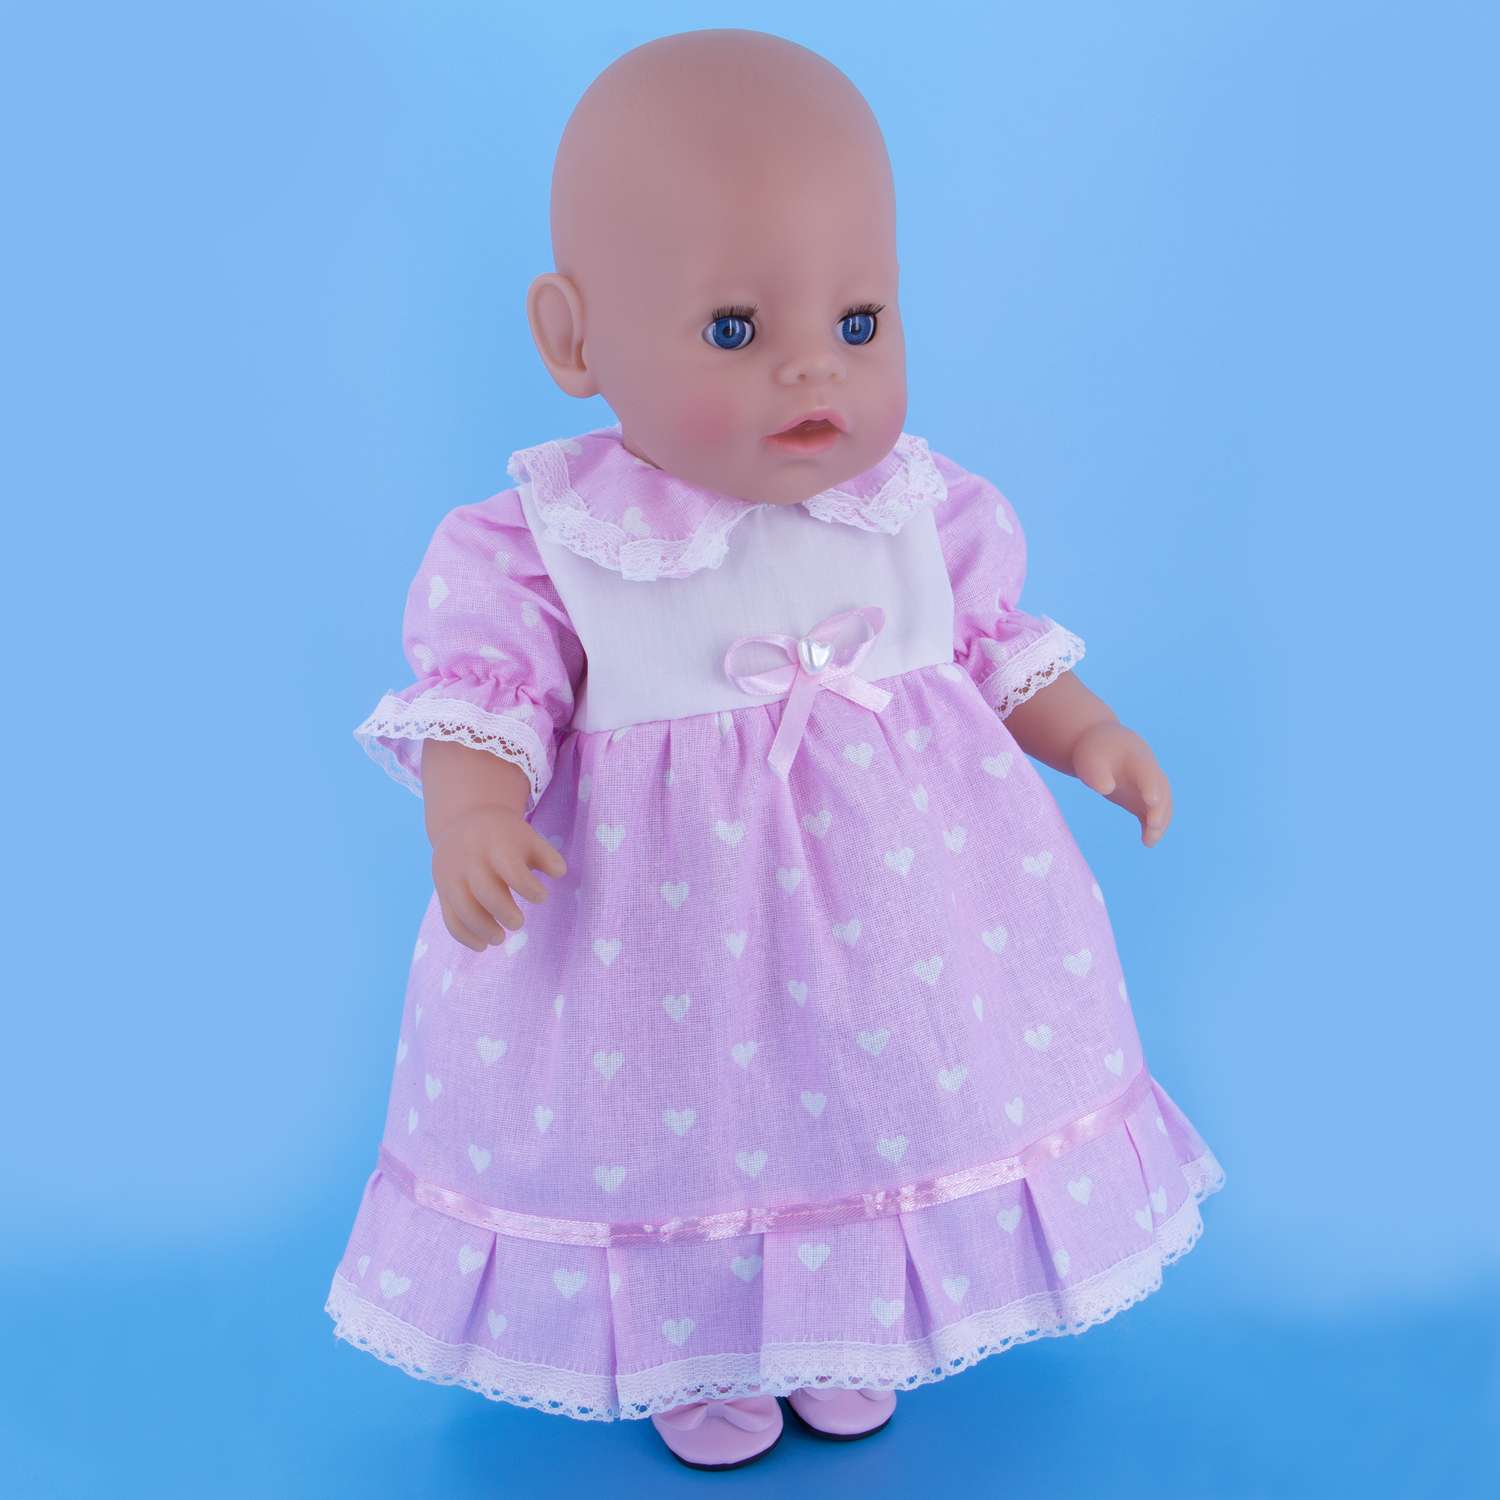 Платье нарядное Модница для пупса 43 см 6114 пастельно-розовый 6114пастельно-розовый - фото 3